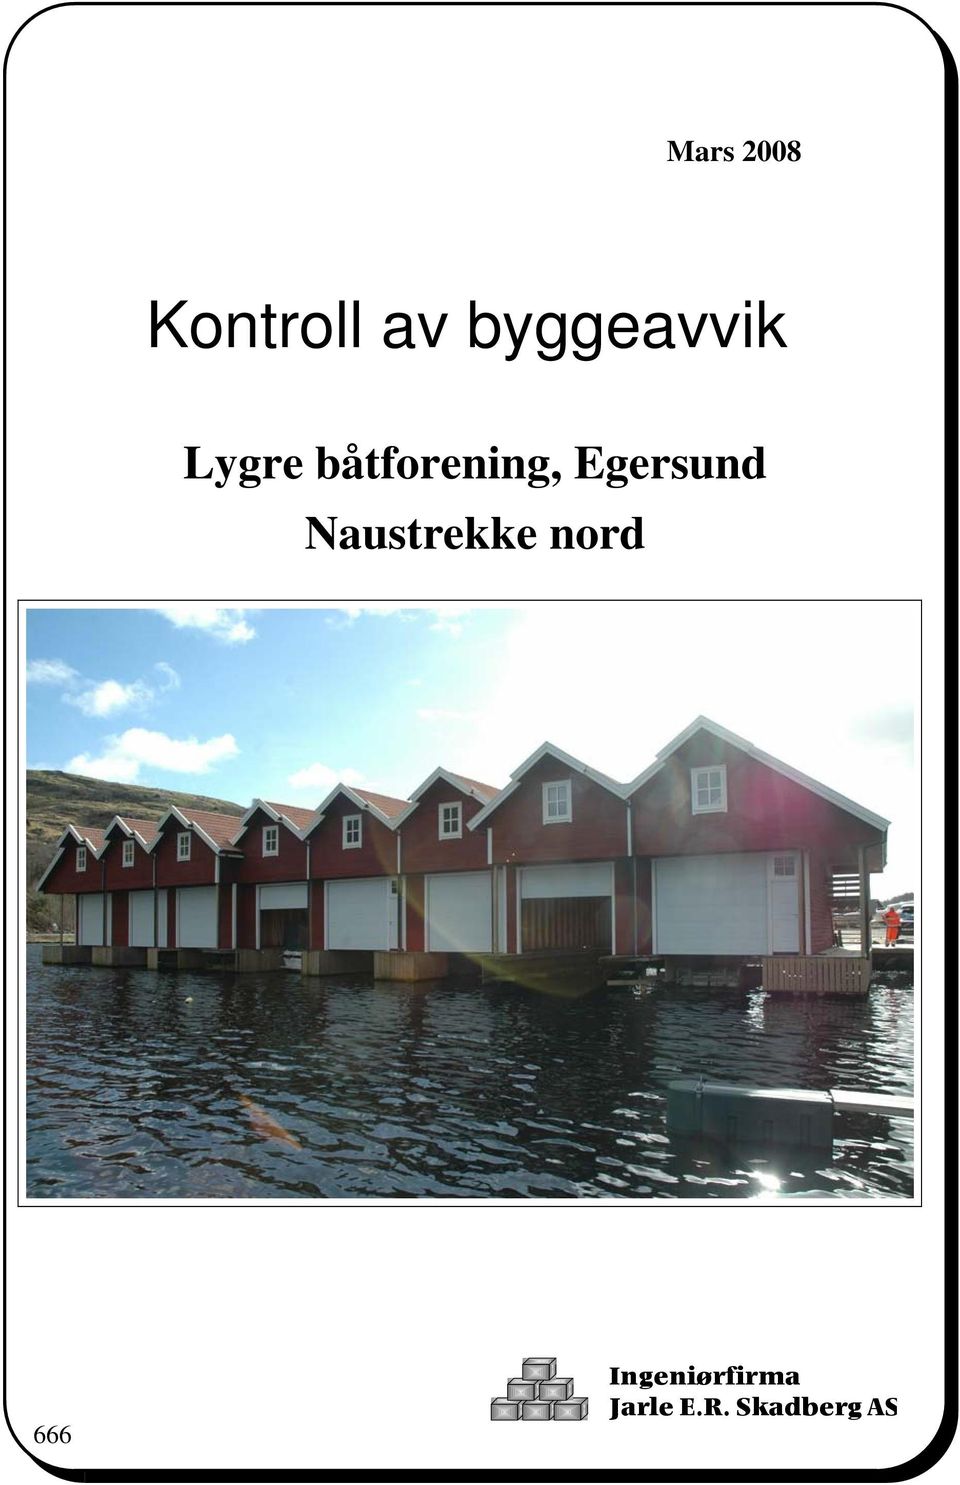 båtforening, Egersund